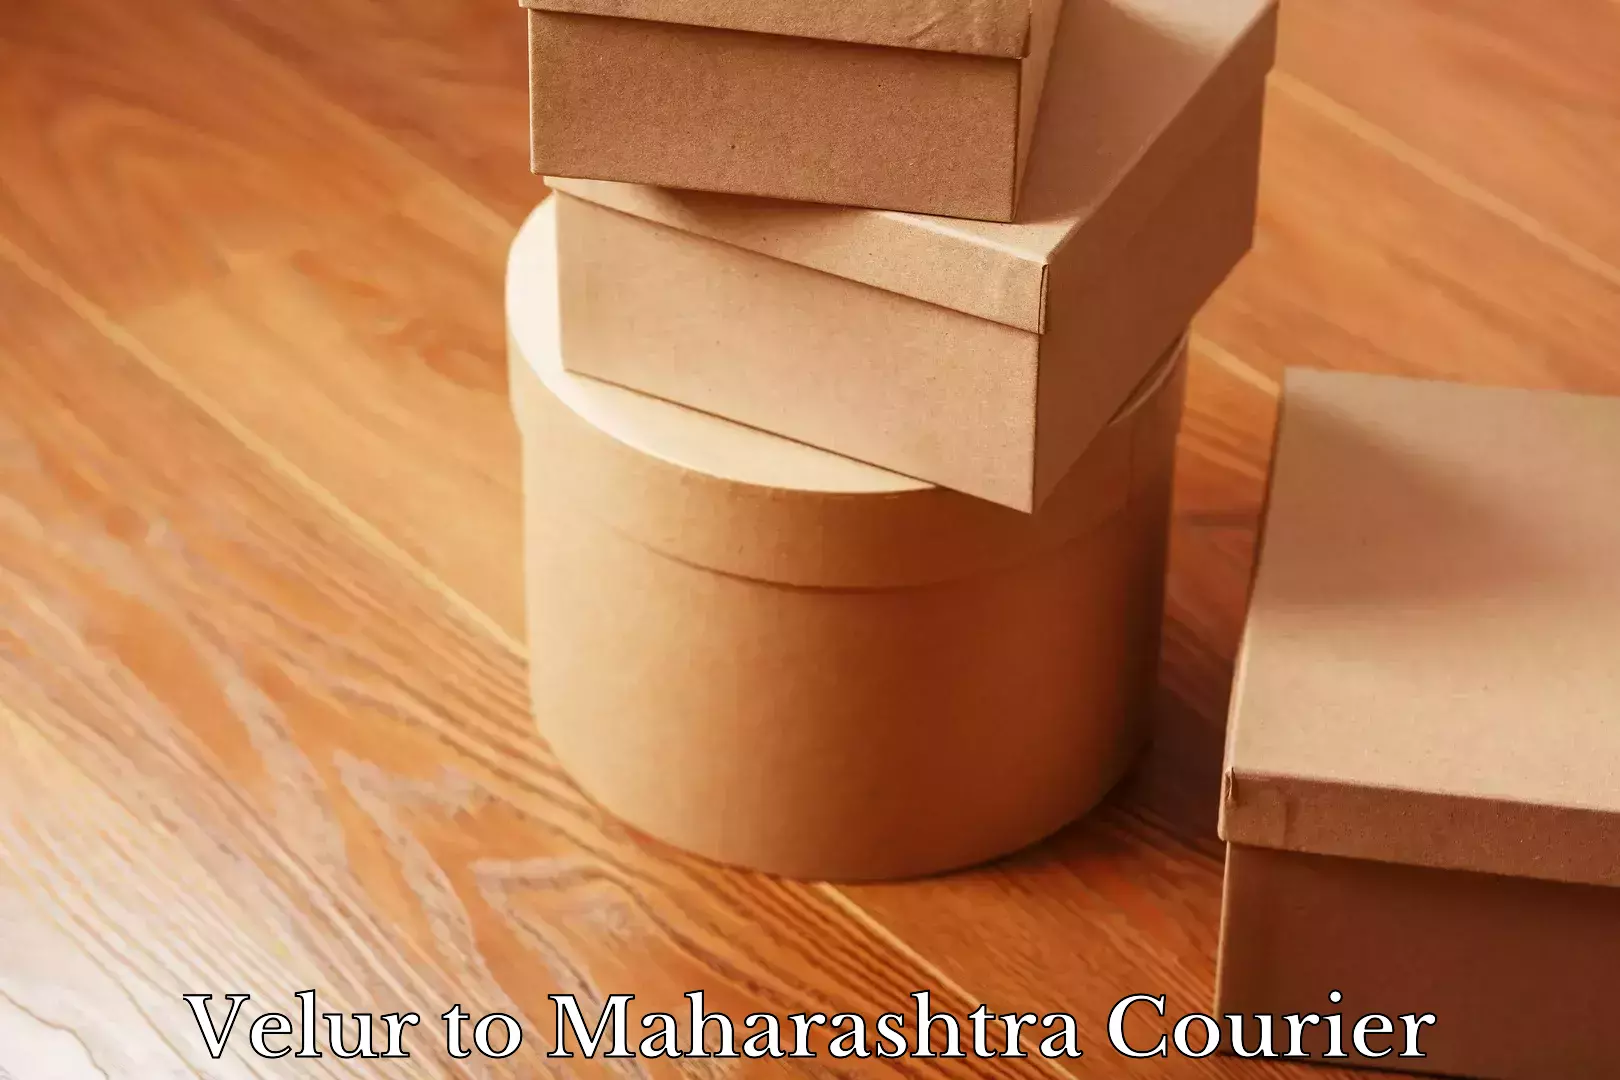 Courier service comparison Velur to Maharashtra